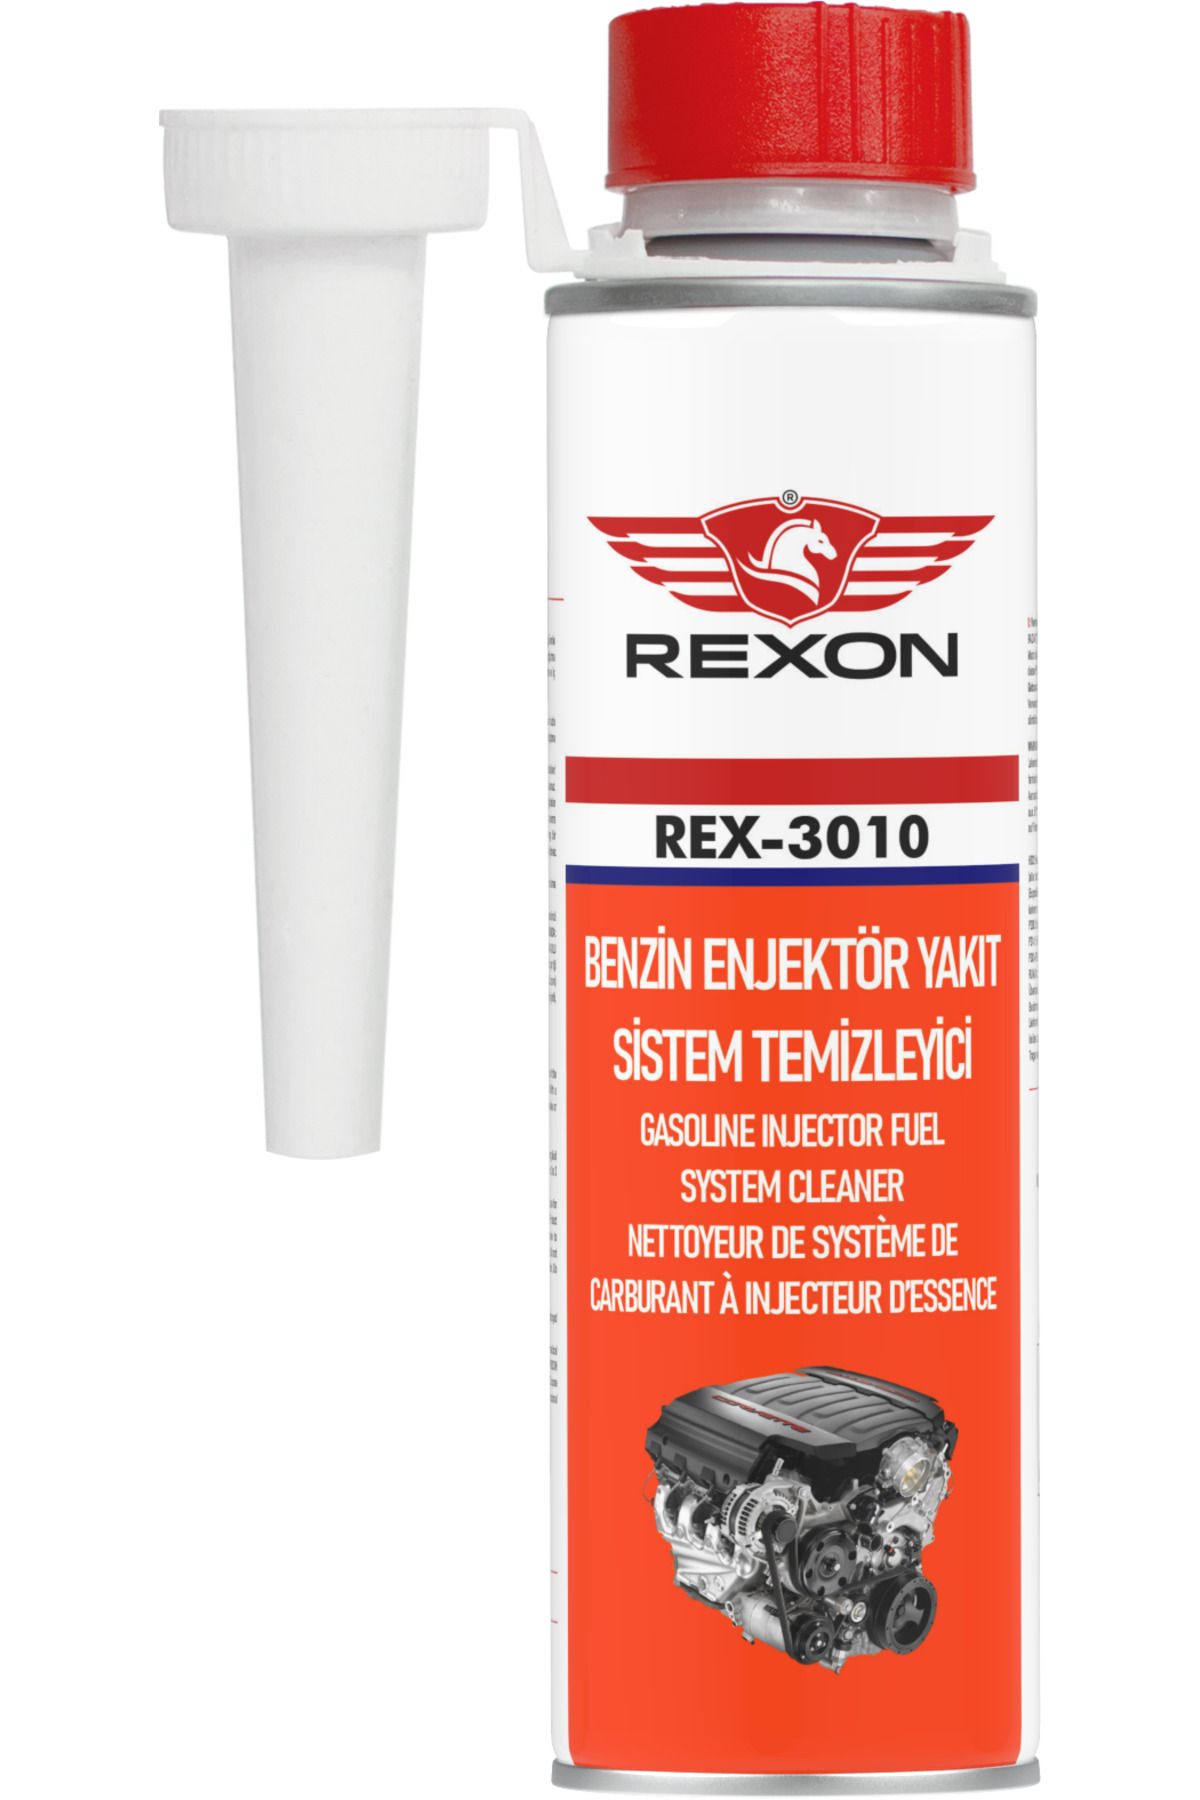 Rexon Benzin Enjektör Yakıt Sistem Temizleyici 300ml